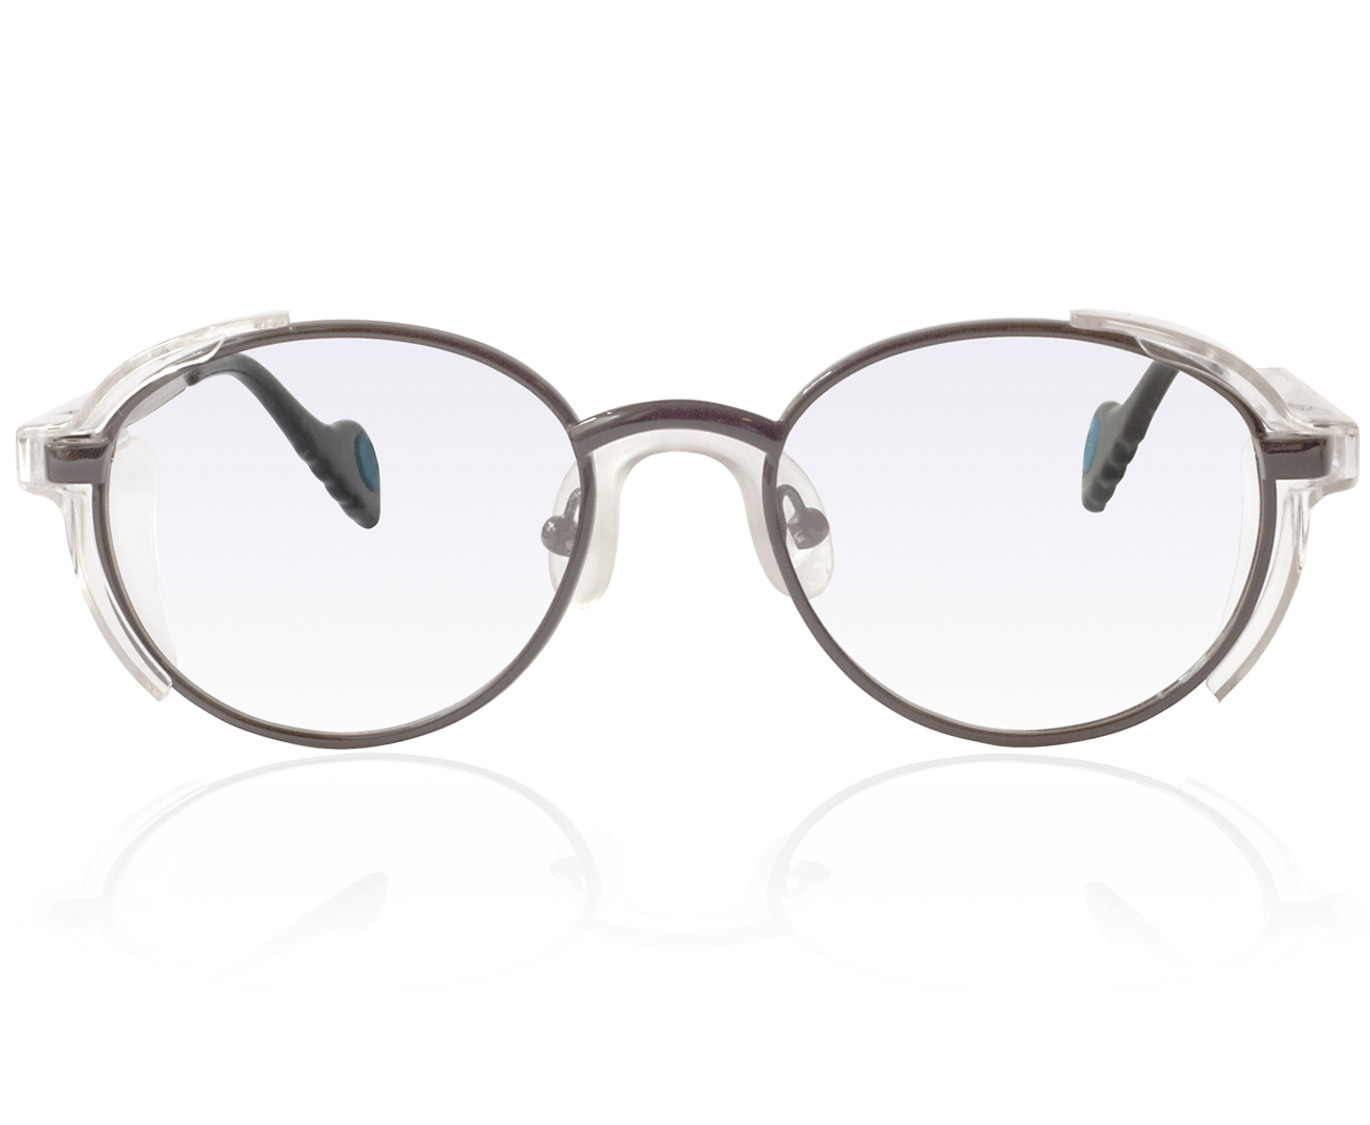 Korrektionsschutzbrille Modell A202